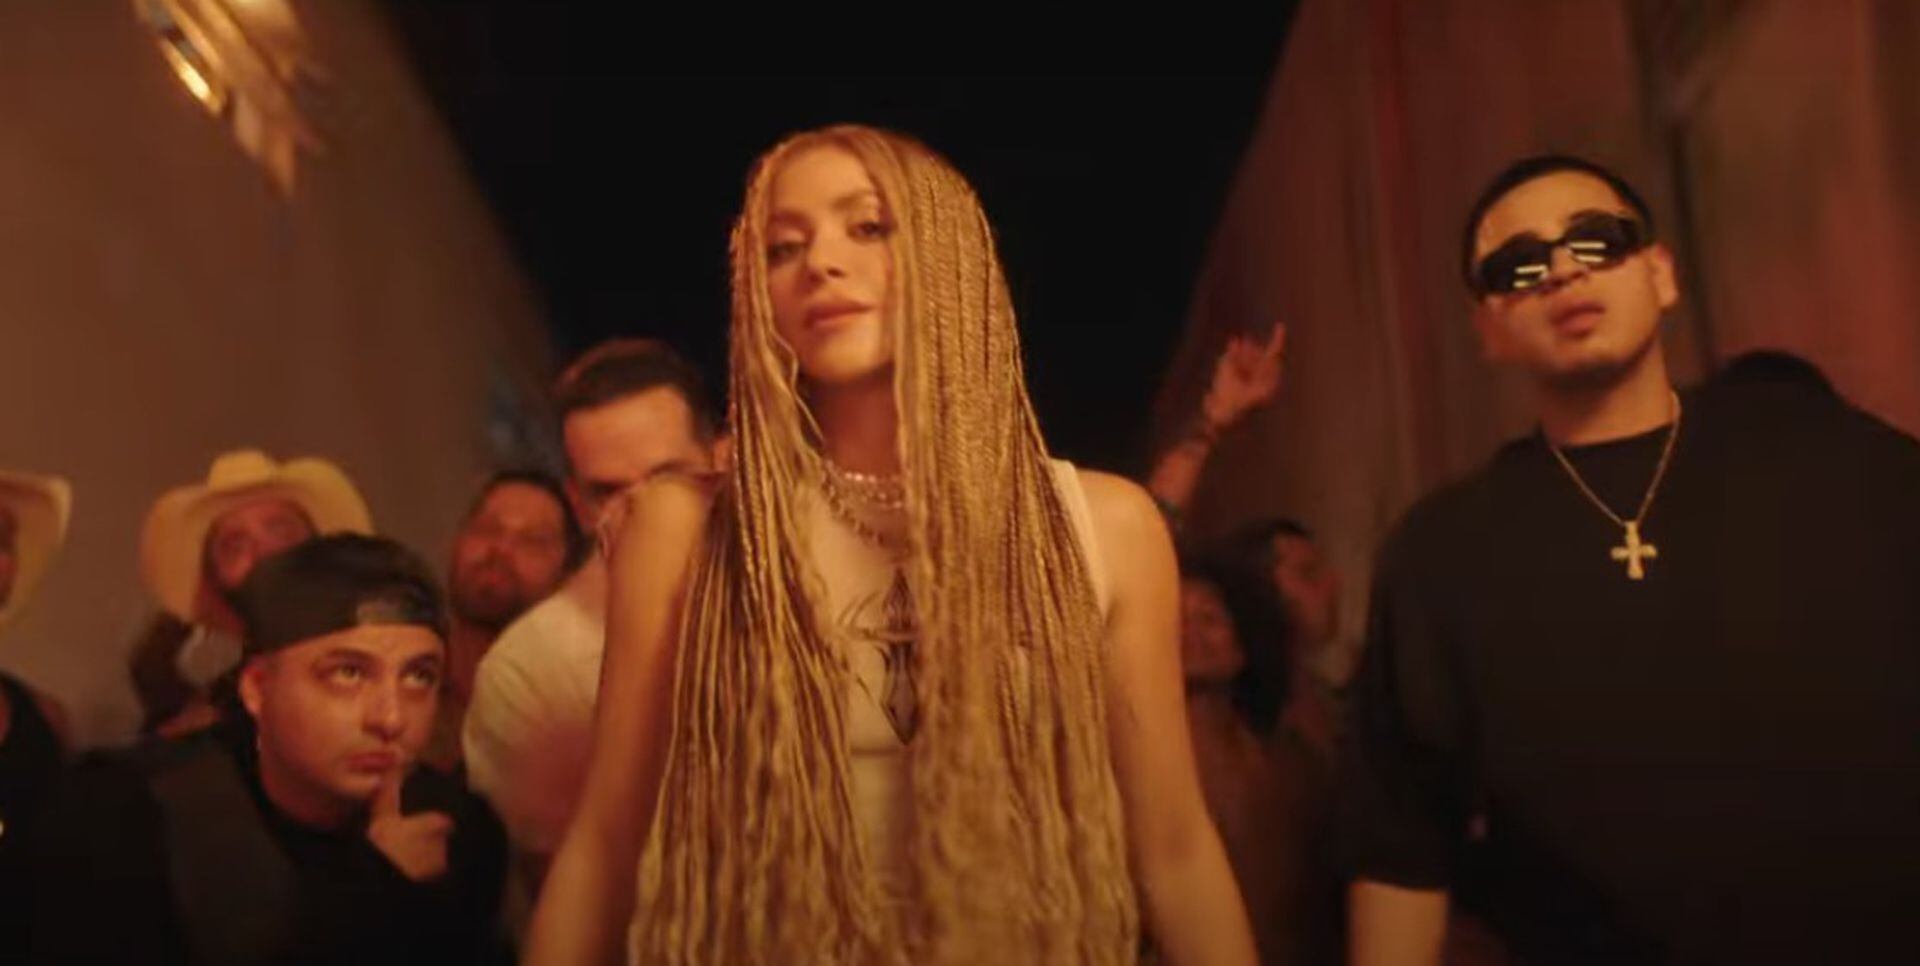 Las pistas que apuntan a que 'El Jefe', la canción de Shakira y Fuerza  Regida, es una crítica social